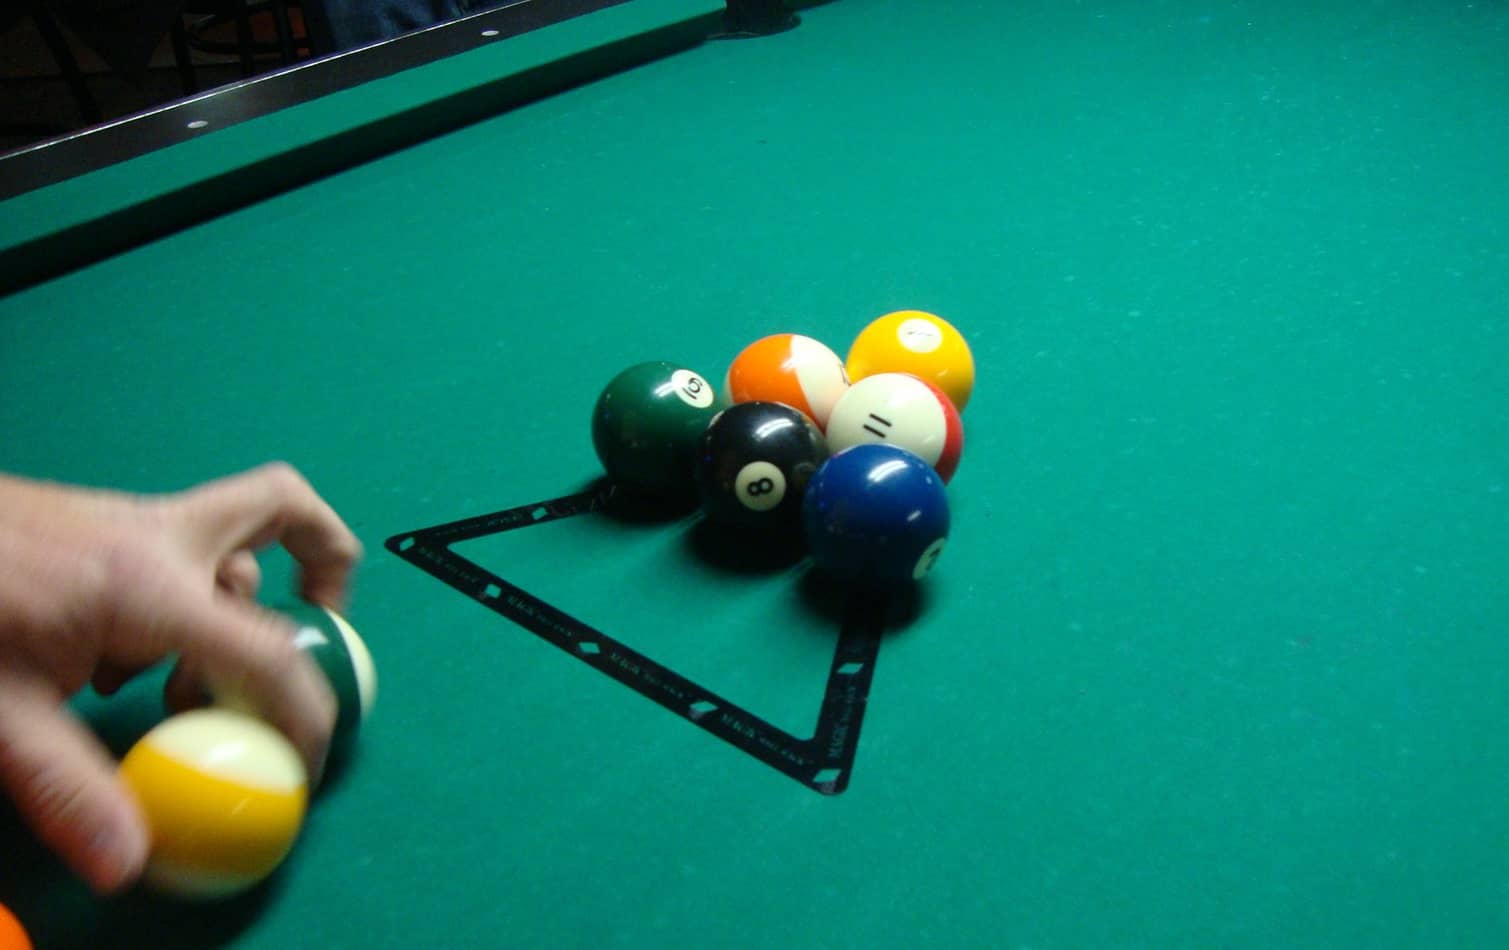 Plastik Billard Snooker Pool Dreieck Triangle Billard Rack für Pool 57,2mm 